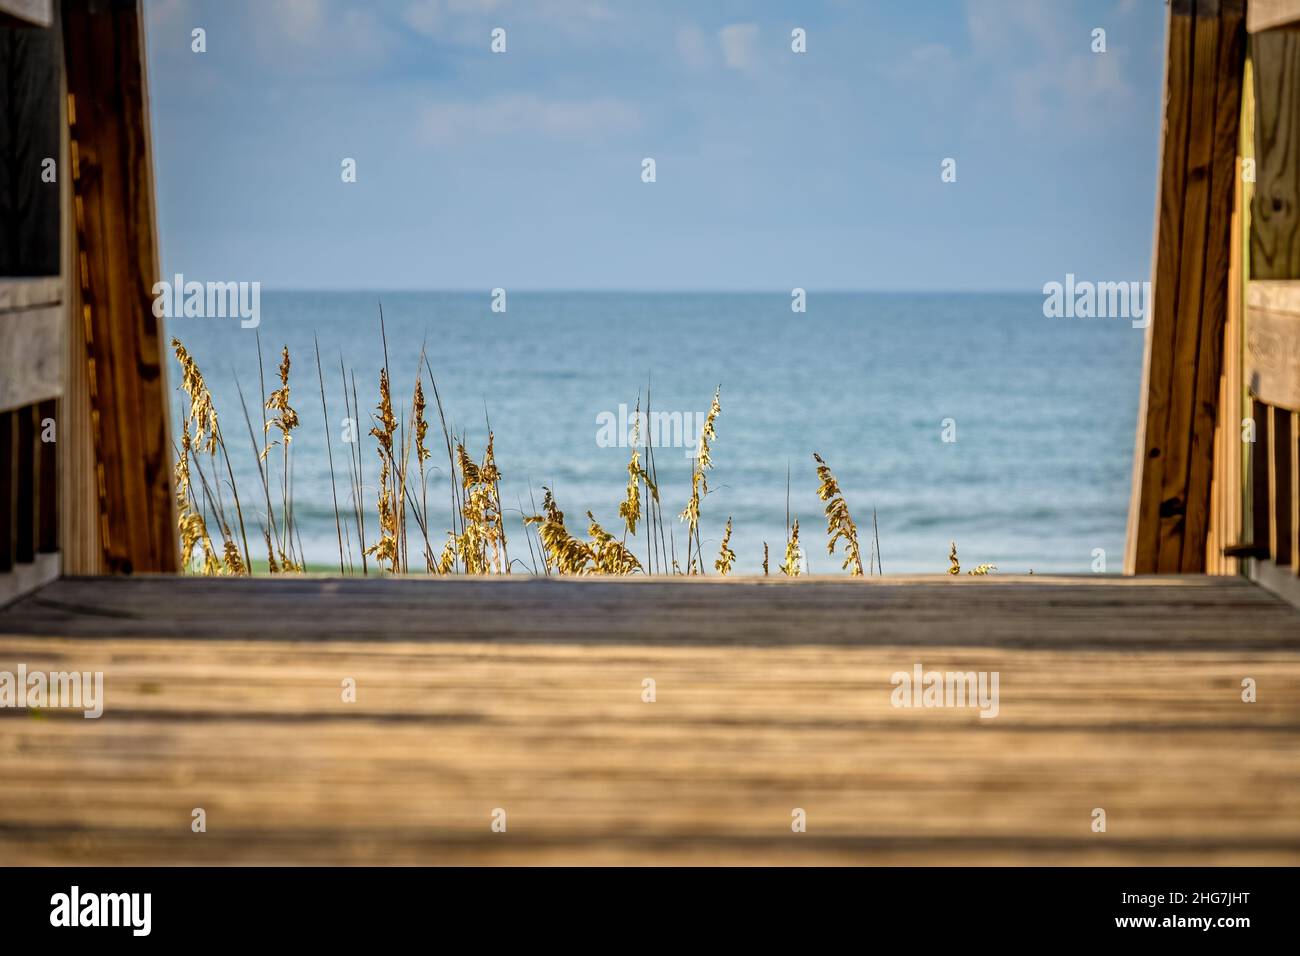 Symbolisch für ein Tor zu einem wartenden Strandurlaub auf Emerald Isle, North Carolina. Stockfoto